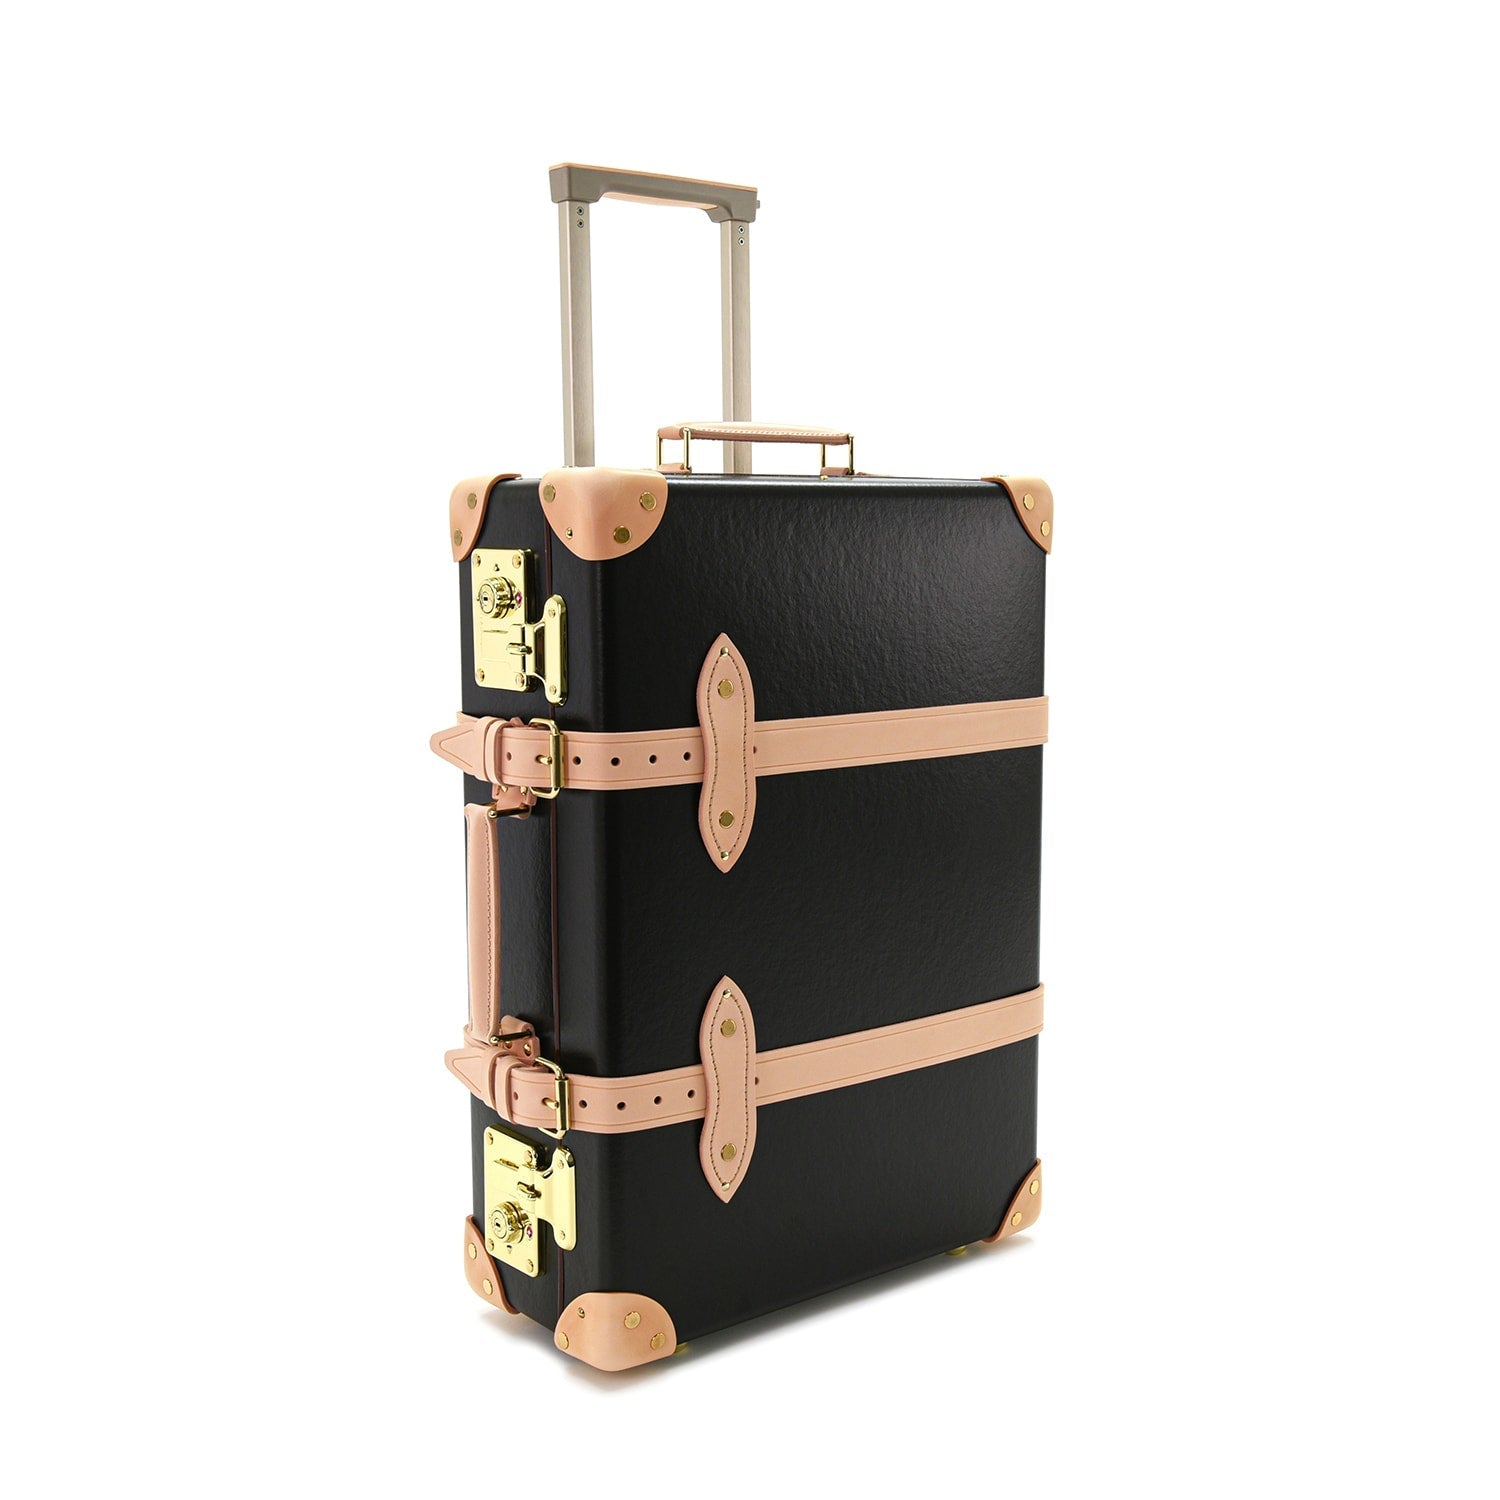 グローブトロッター サファリラージスーツケース - 旅行用バッグ 